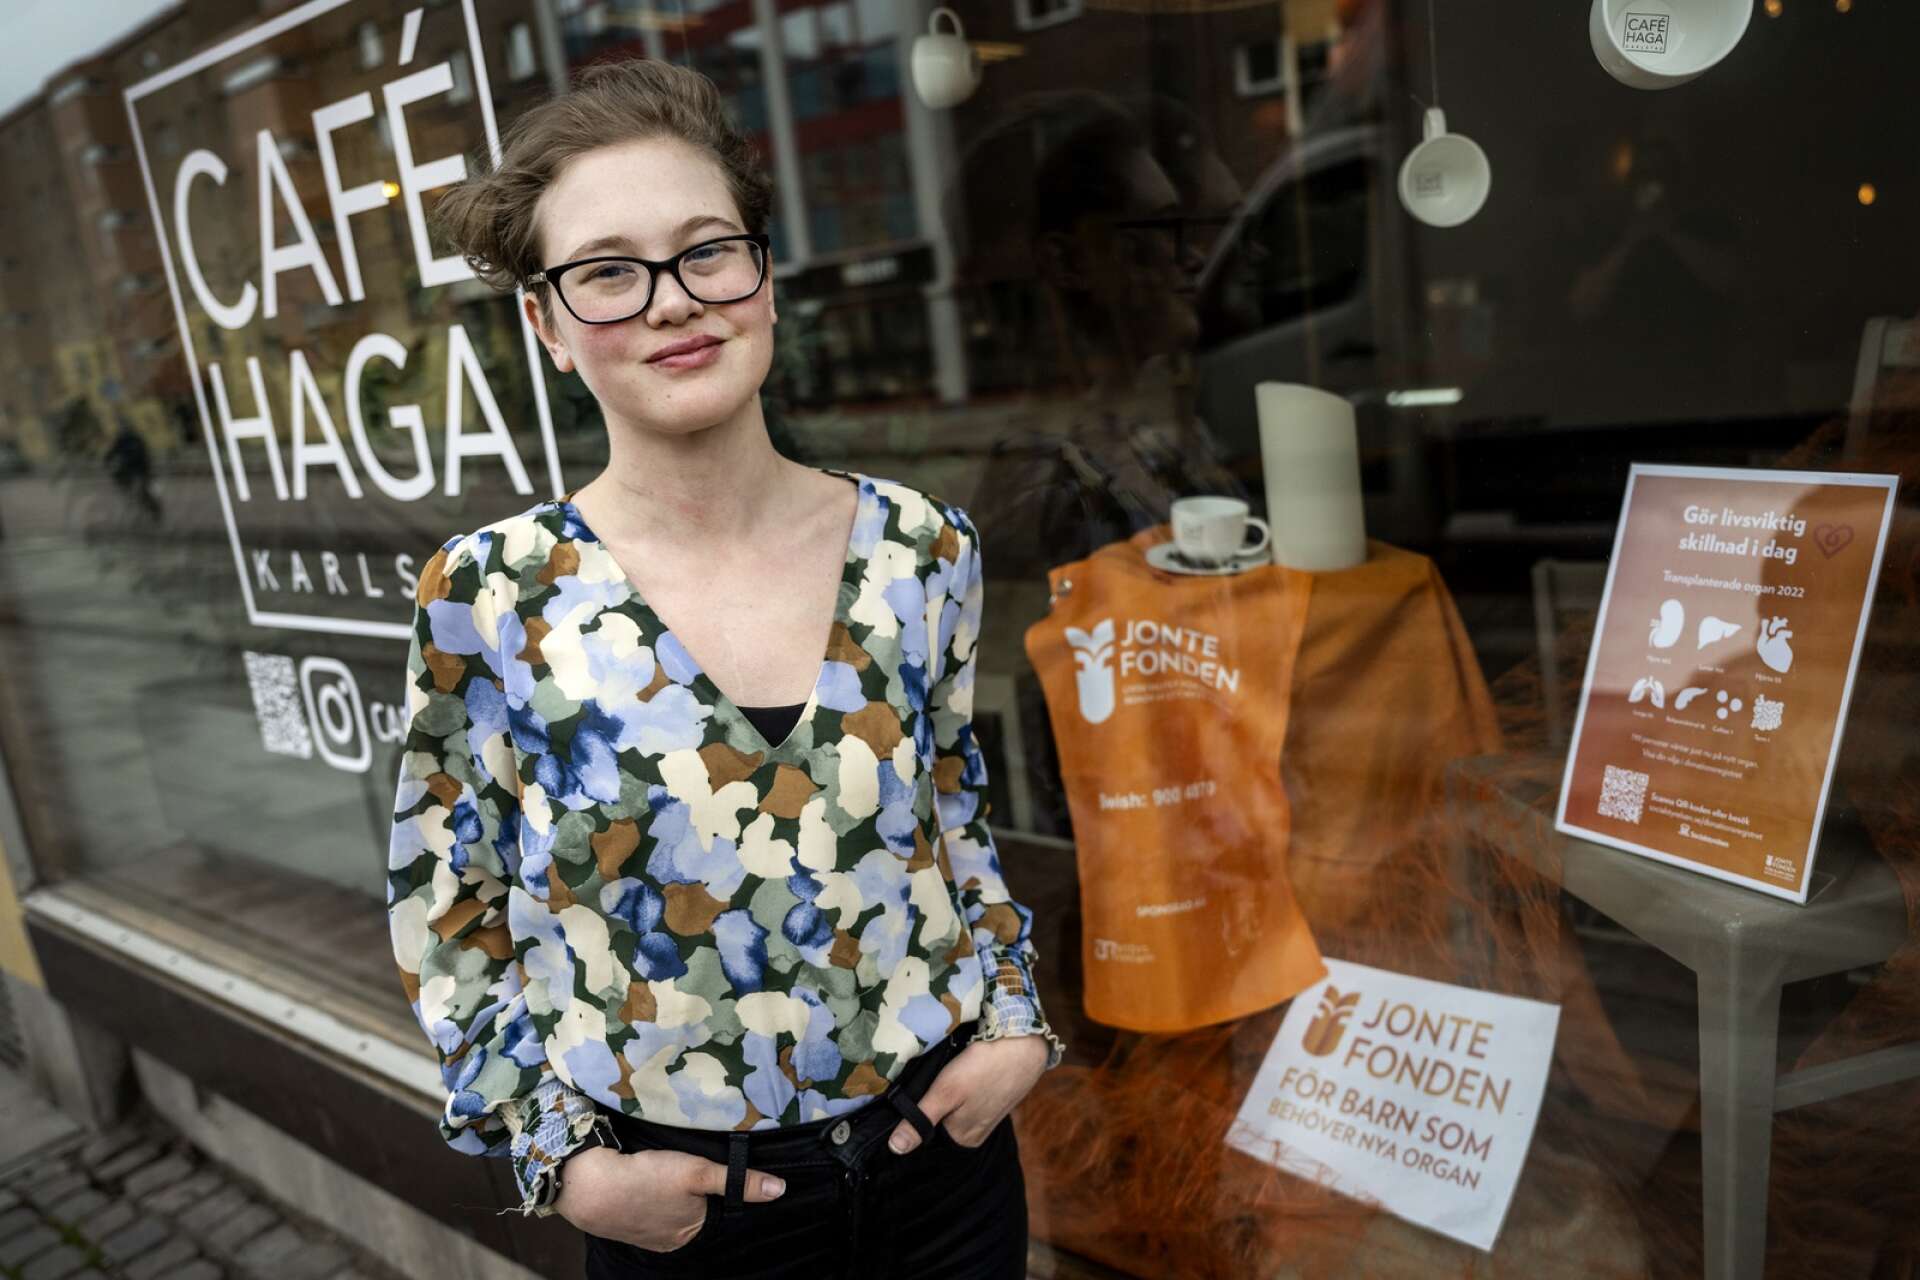 På Café Haga gör Alex sin praktik på vuxenutbildningen, och just nu har hon sett till att fixa en temavecka för Jontefonden som stöttar organdonerade barn.